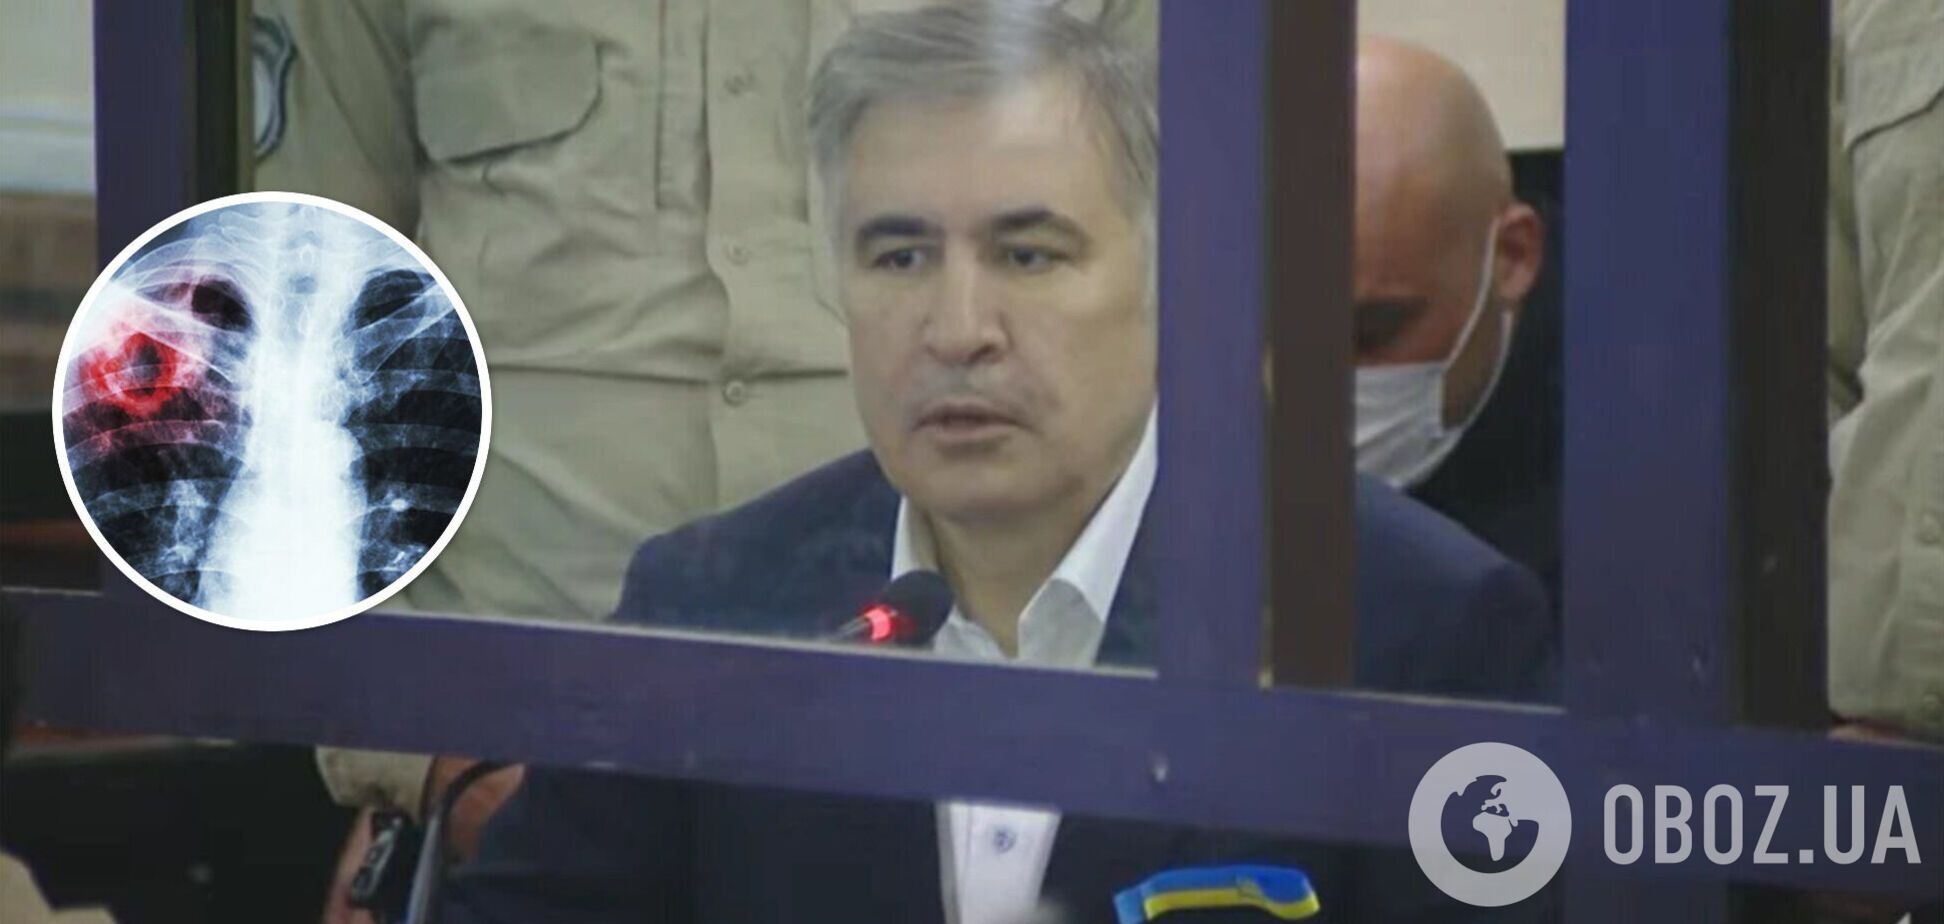 У Саакашвили в тюрьме диагностировали деменцию и туберкулез: что известно о его состоянии